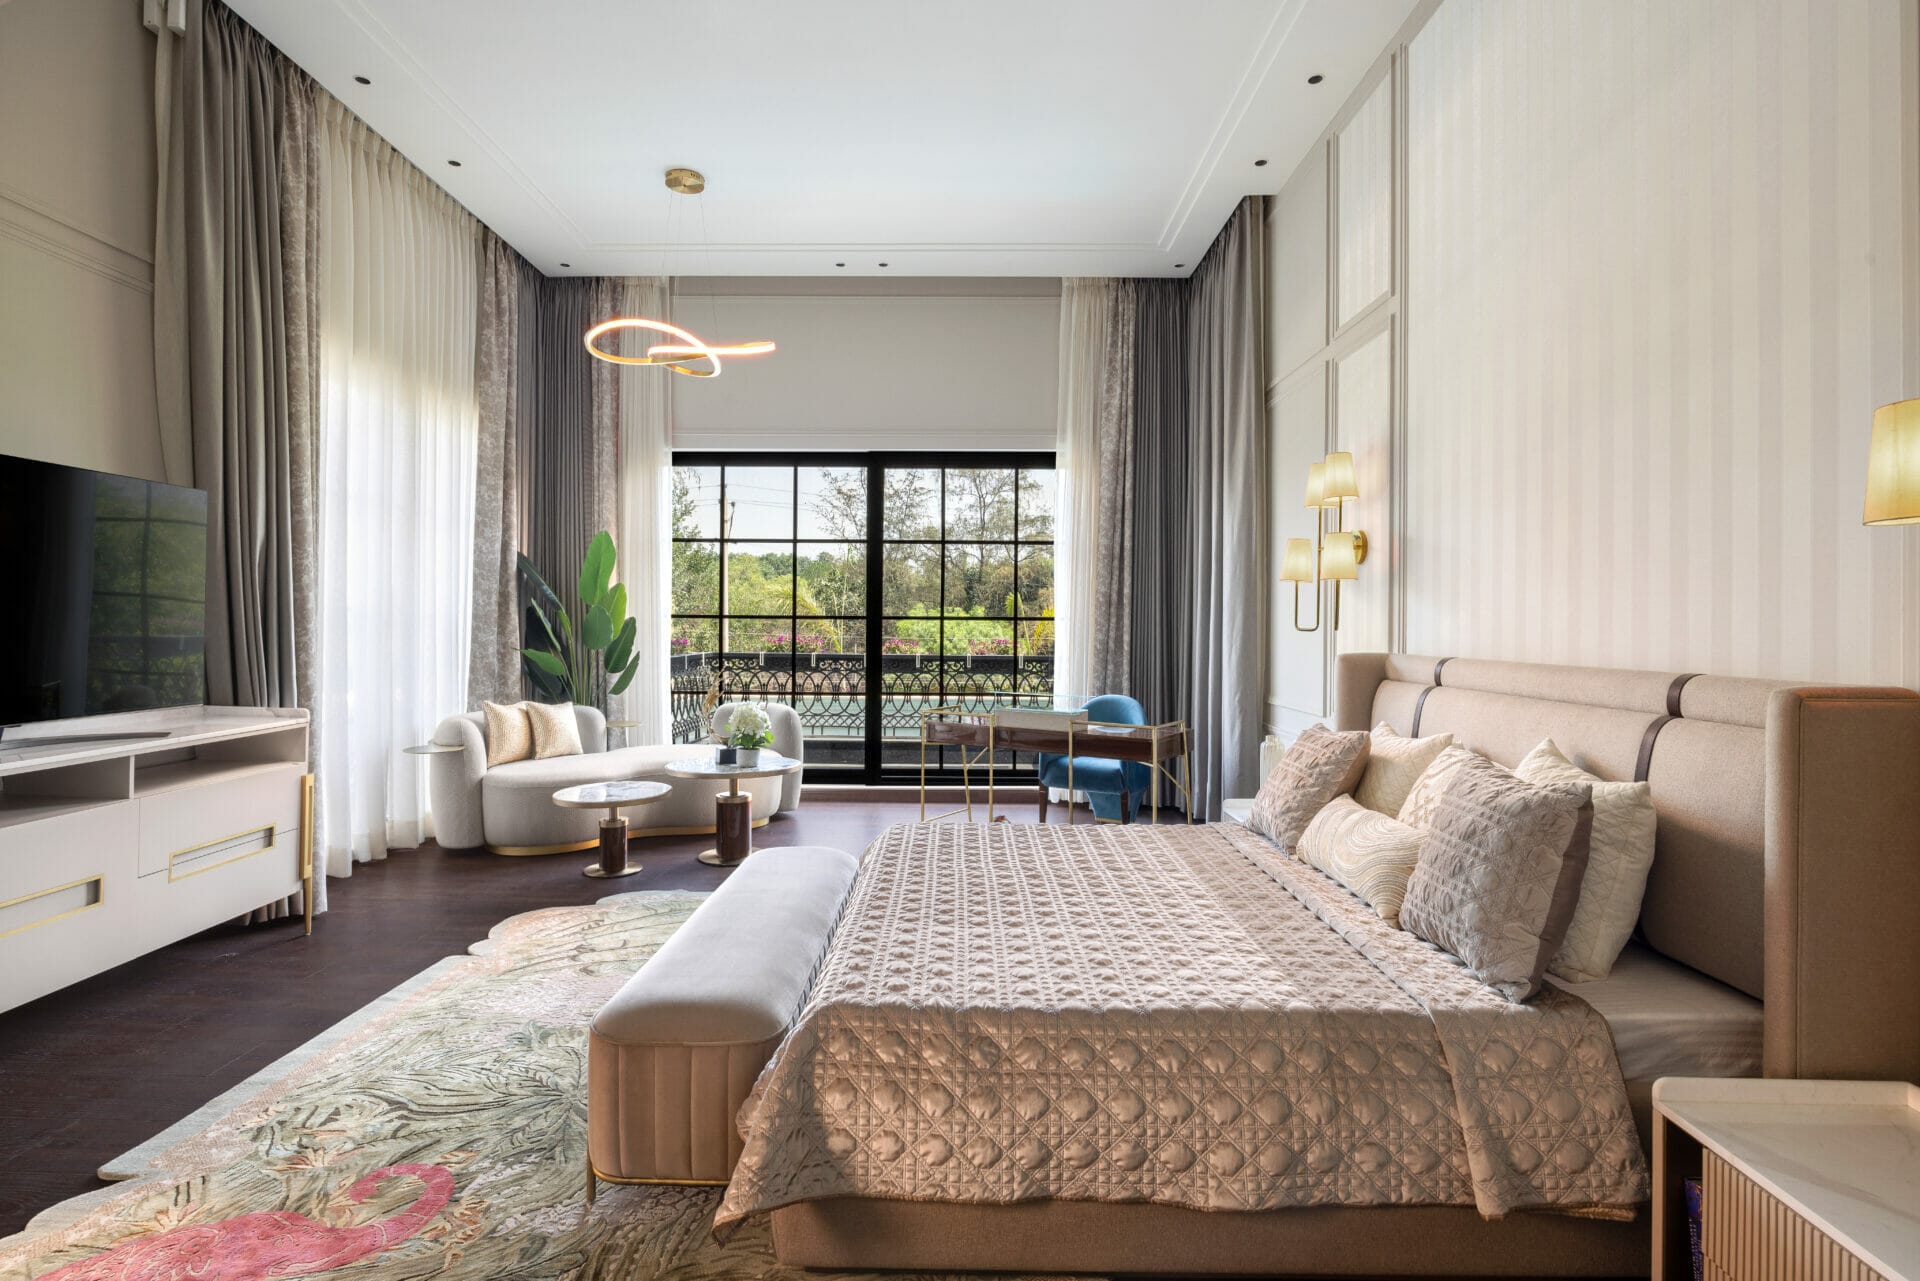 "Villa Verdure: 11,000 sq ft Oasis in Vasant Kunj with 4 Luxe Bedrooms"